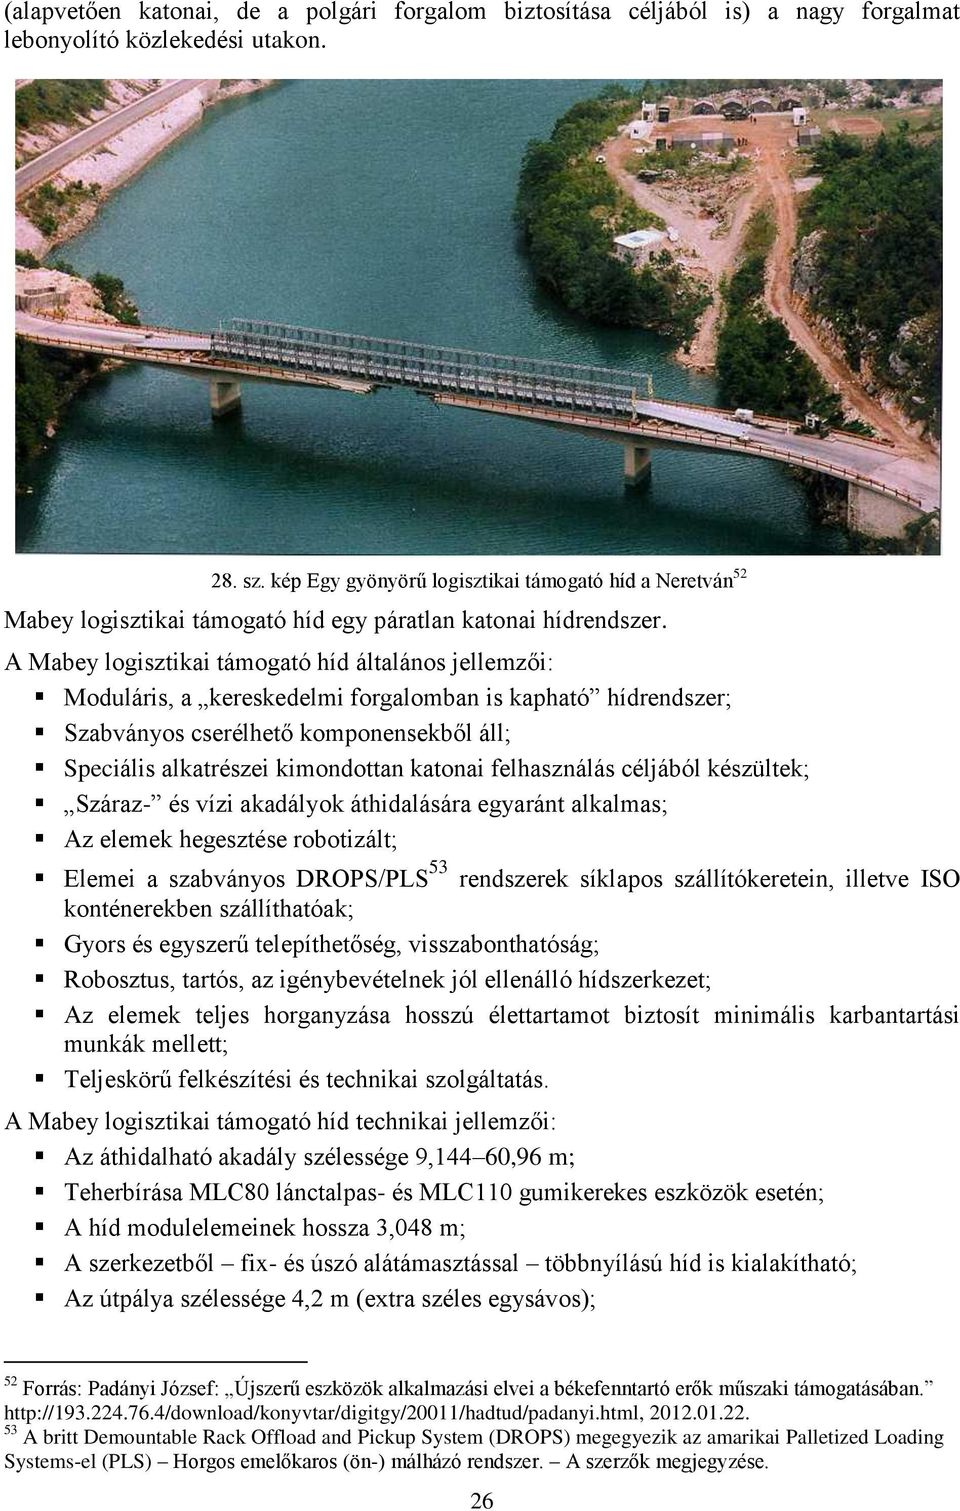 A Mabey logisztikai támogató híd általános jellemzői: Moduláris, a kereskedelmi forgalomban is kapható hídrendszer; Szabványos cserélhető komponensekből áll; Speciális alkatrészei kimondottan katonai